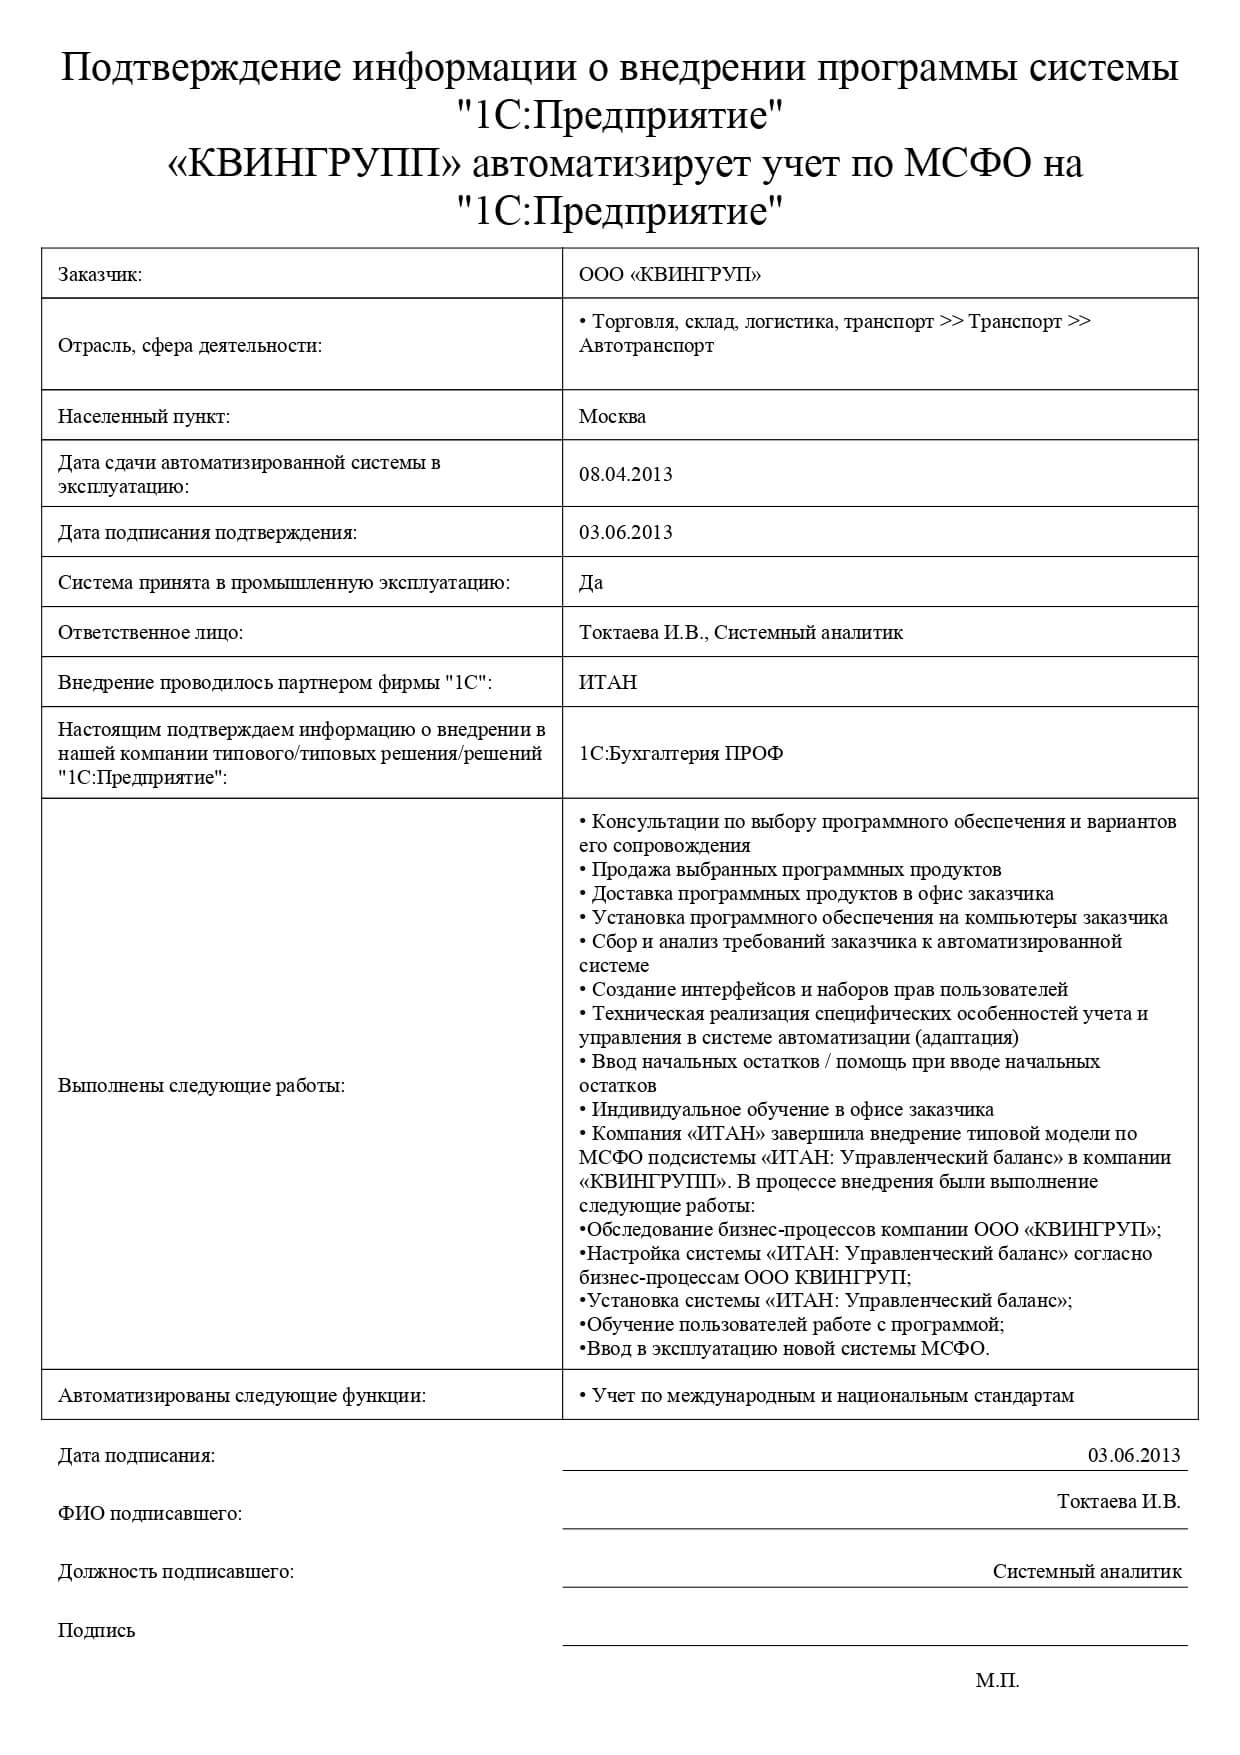 Автоматизация системы учета и отчетности по МСФО ООО «КВИНГРУПП»